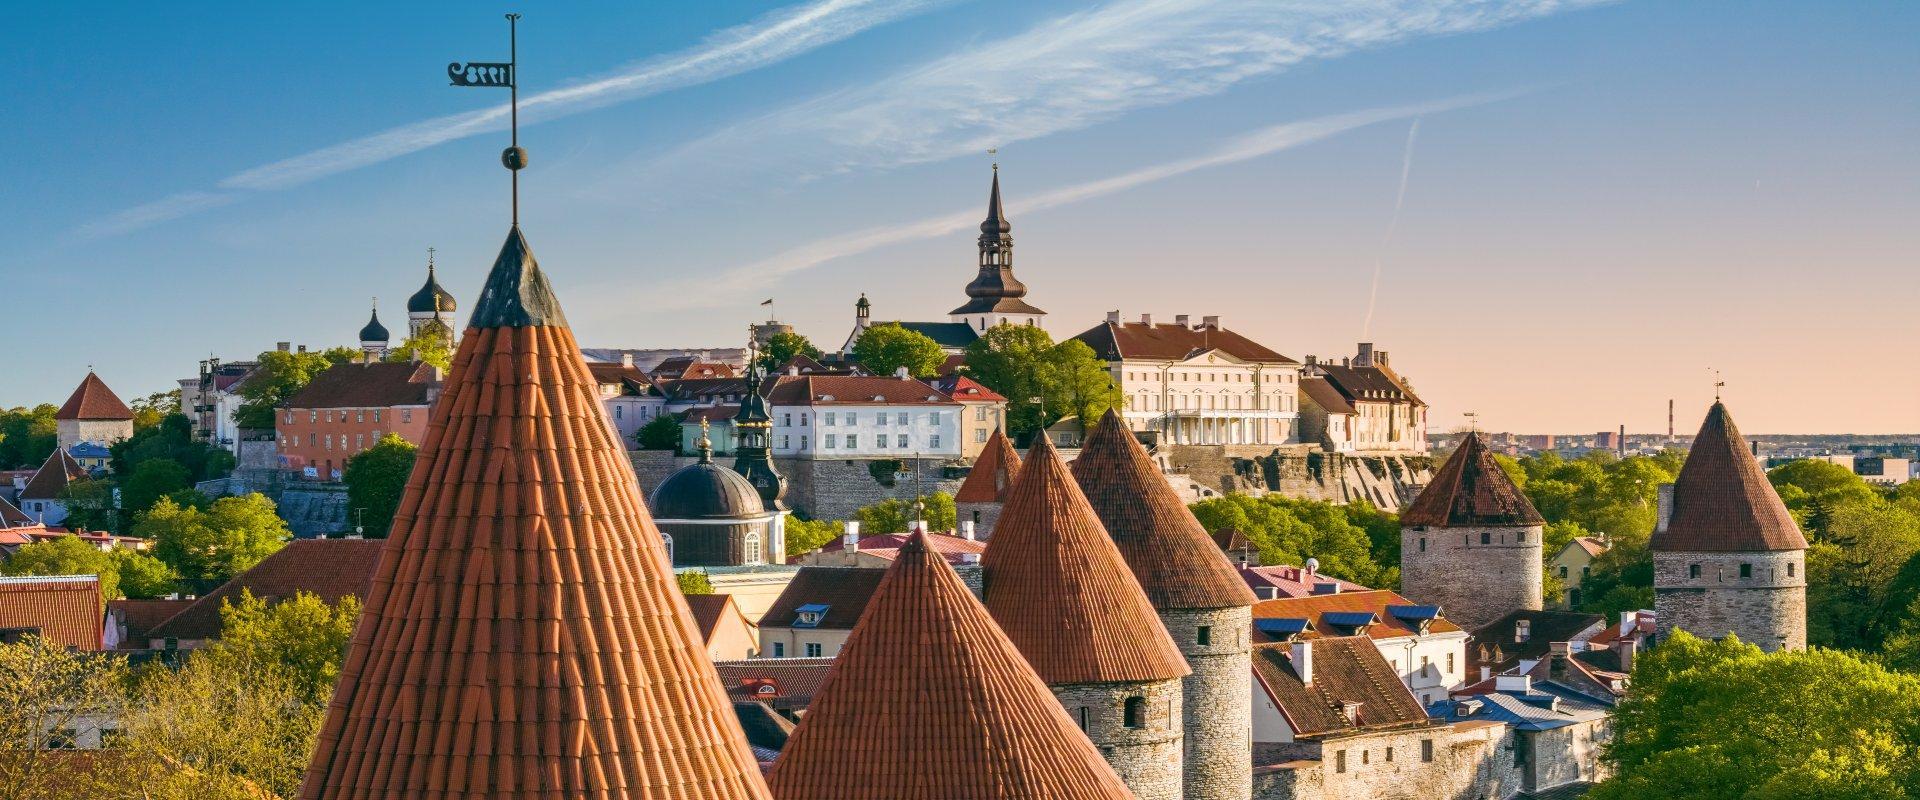 Die Altstadt-Tage in Tallinn sind das größte Fest in der Altstadt, das dem örtlichen Kulturerbe und den Bürgern gewidmet ist. Innerhalb von mehreren T